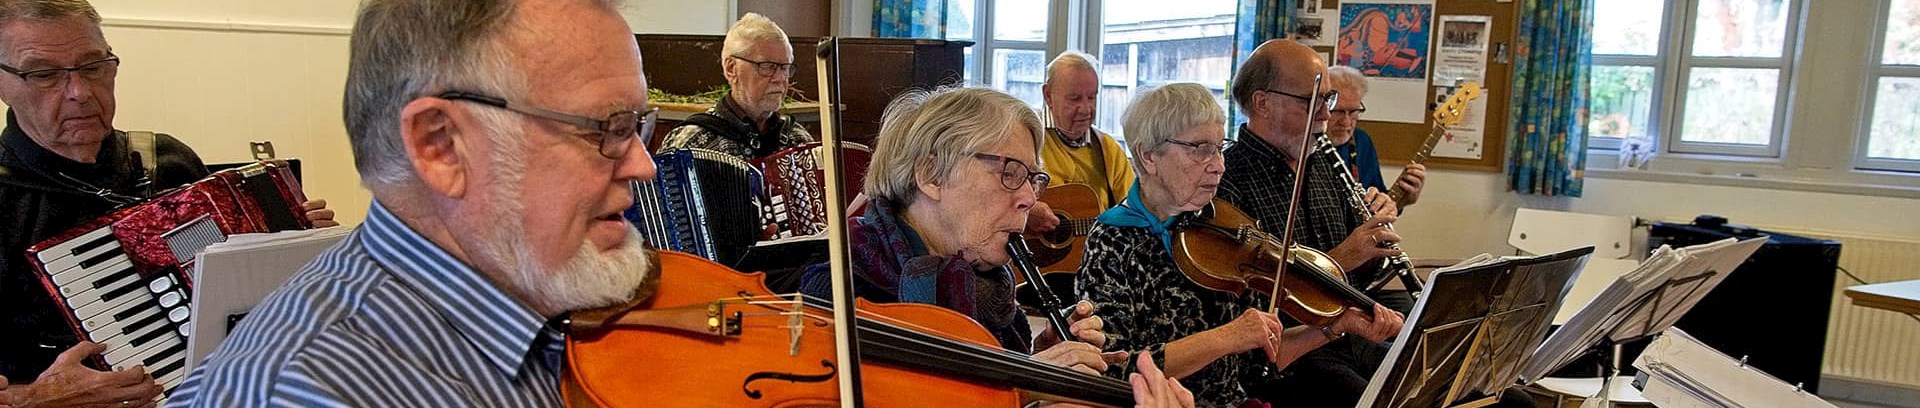 'Onsdagsorkestret' ved FOF Aarhus under ledelse af Poul Bech Christensen